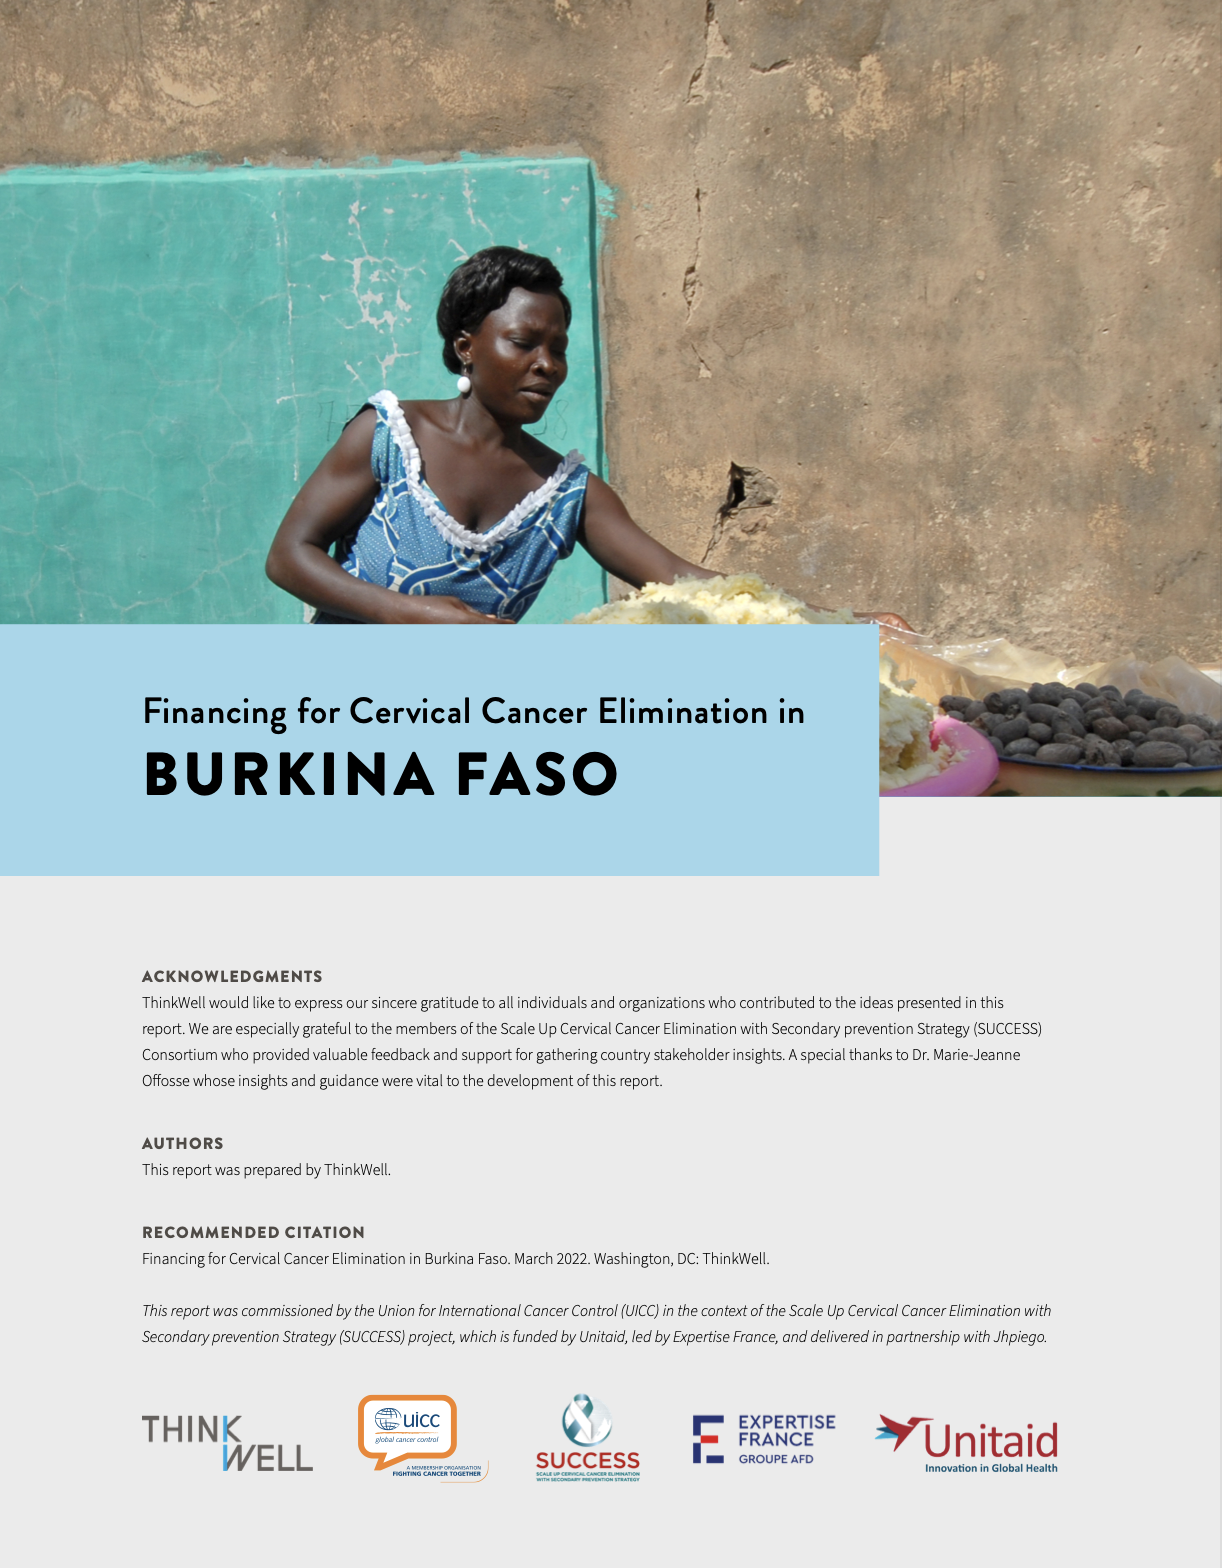 Burkina Faso: Financing for Cervical Cancer Elimination